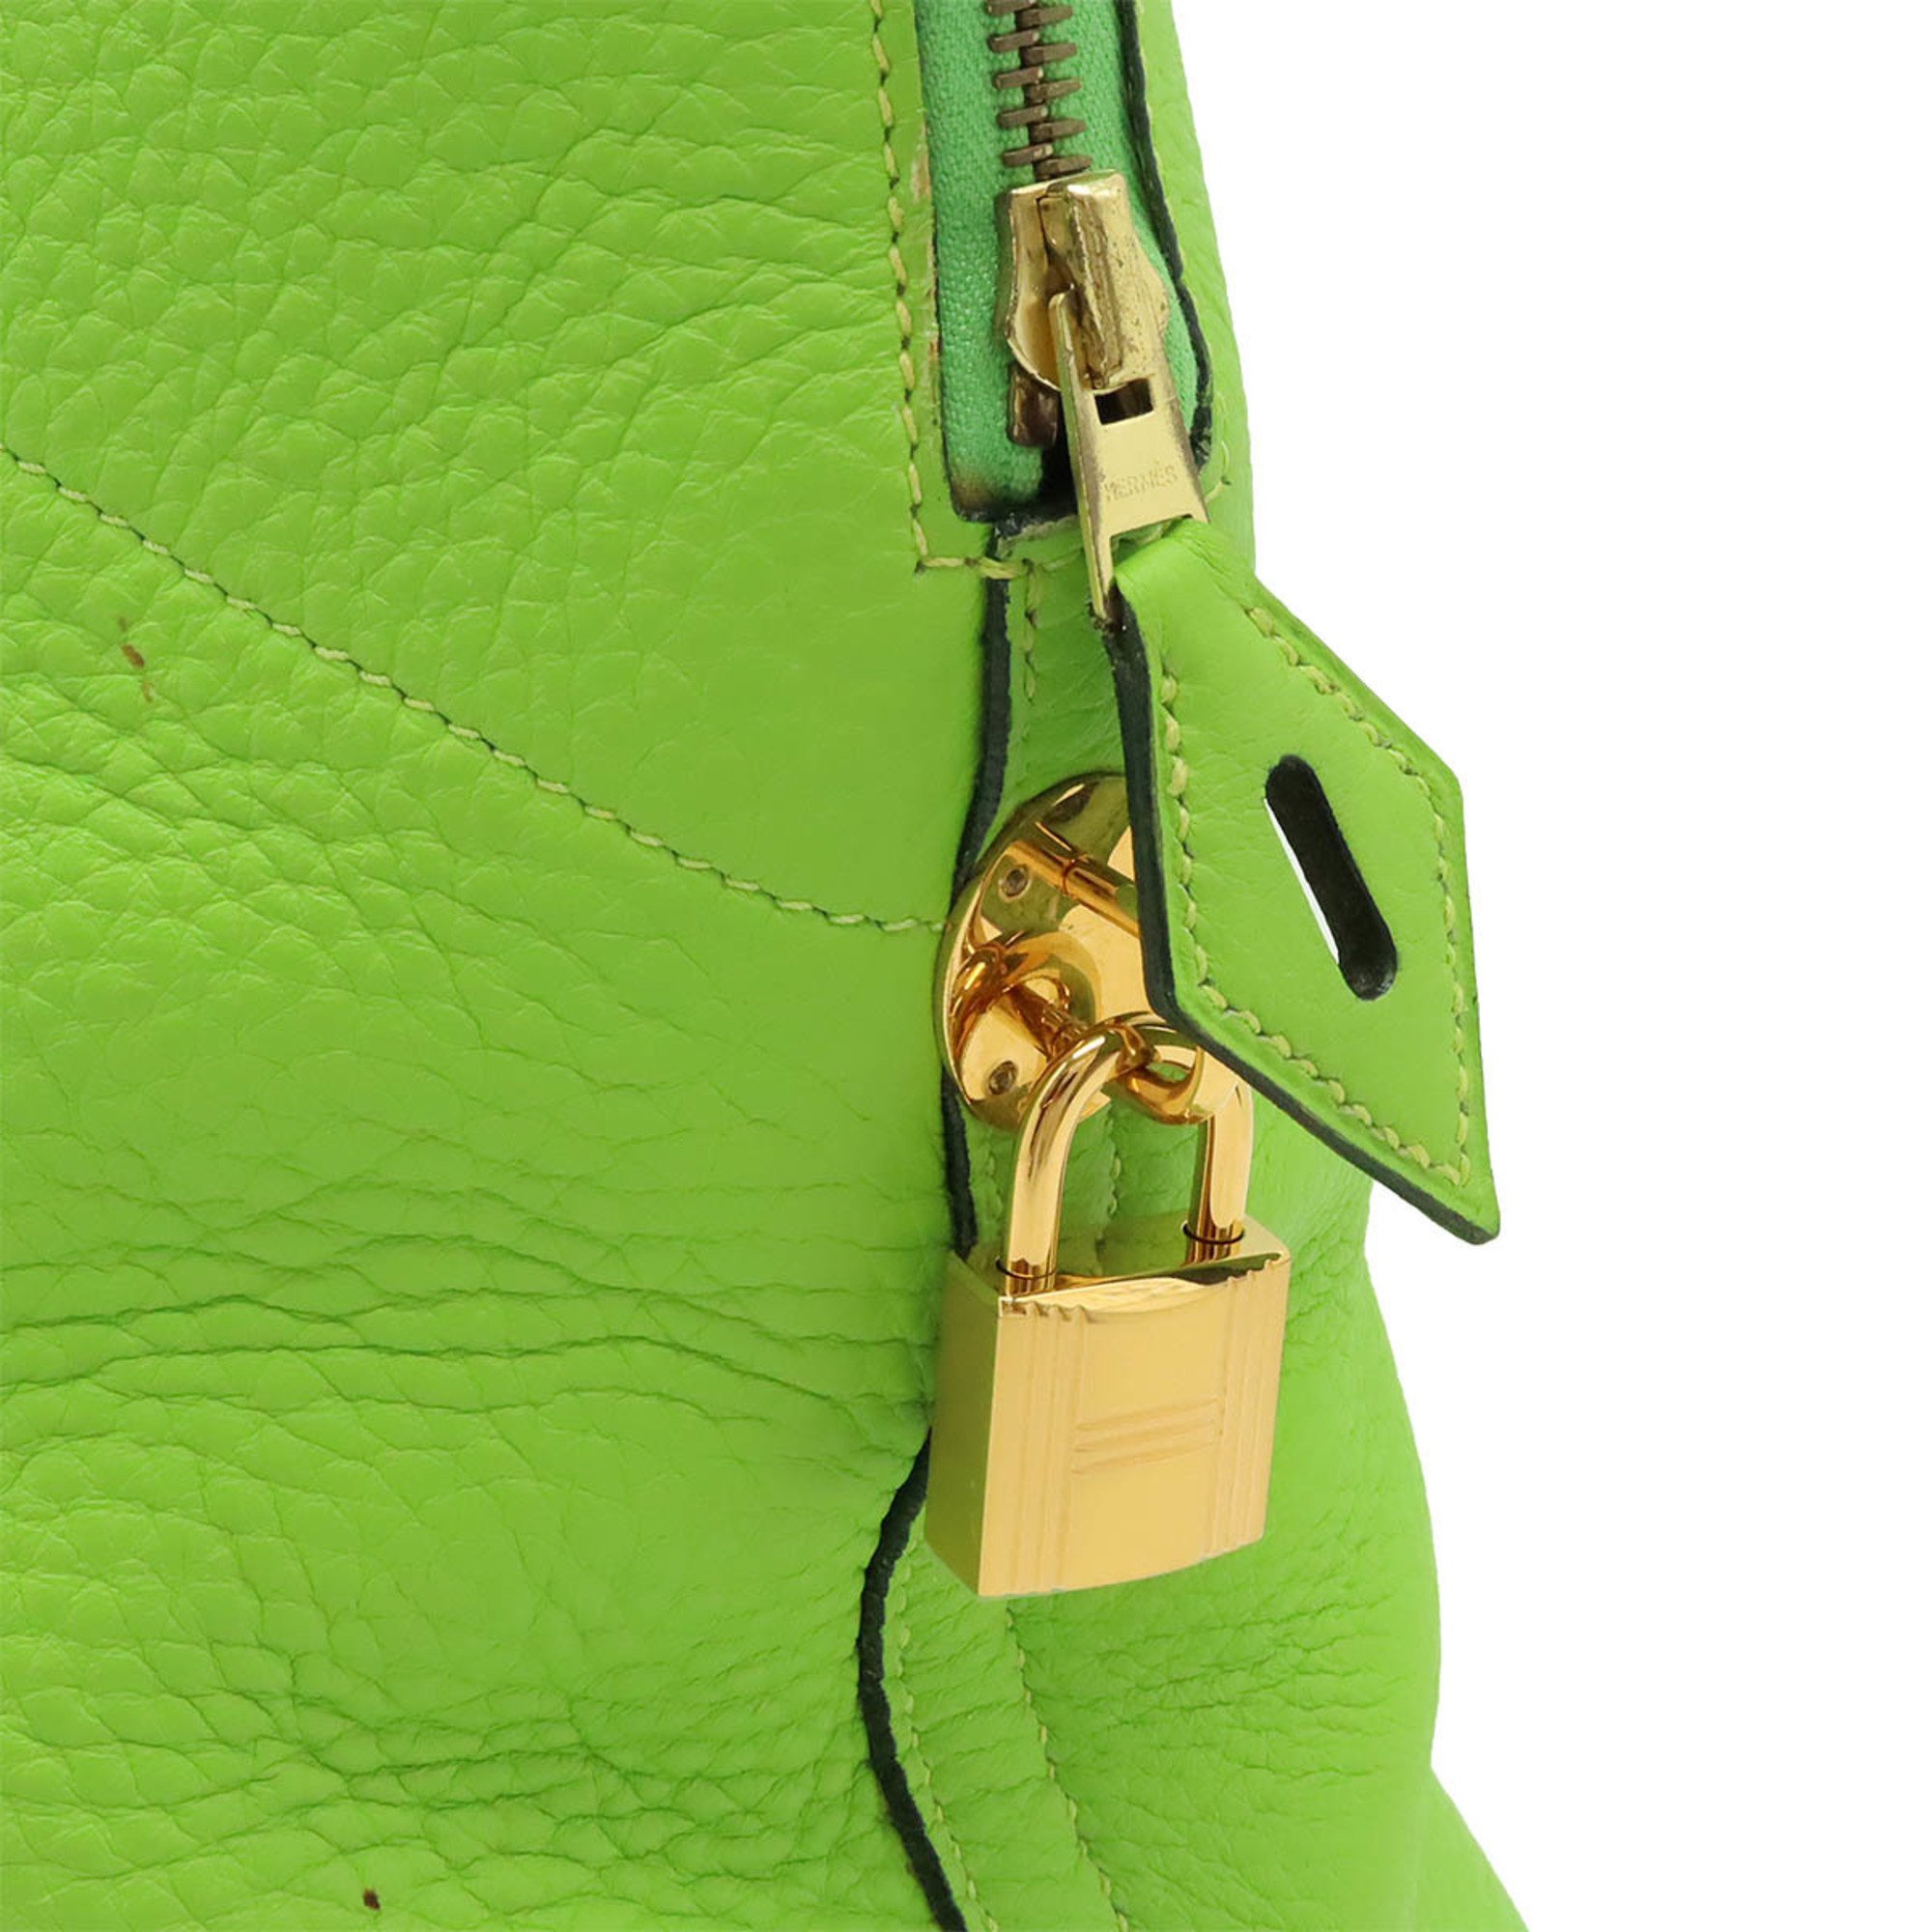 HERMES Bolide 35 handbag shoulder bag Togo leather apple green yellow □G stamp